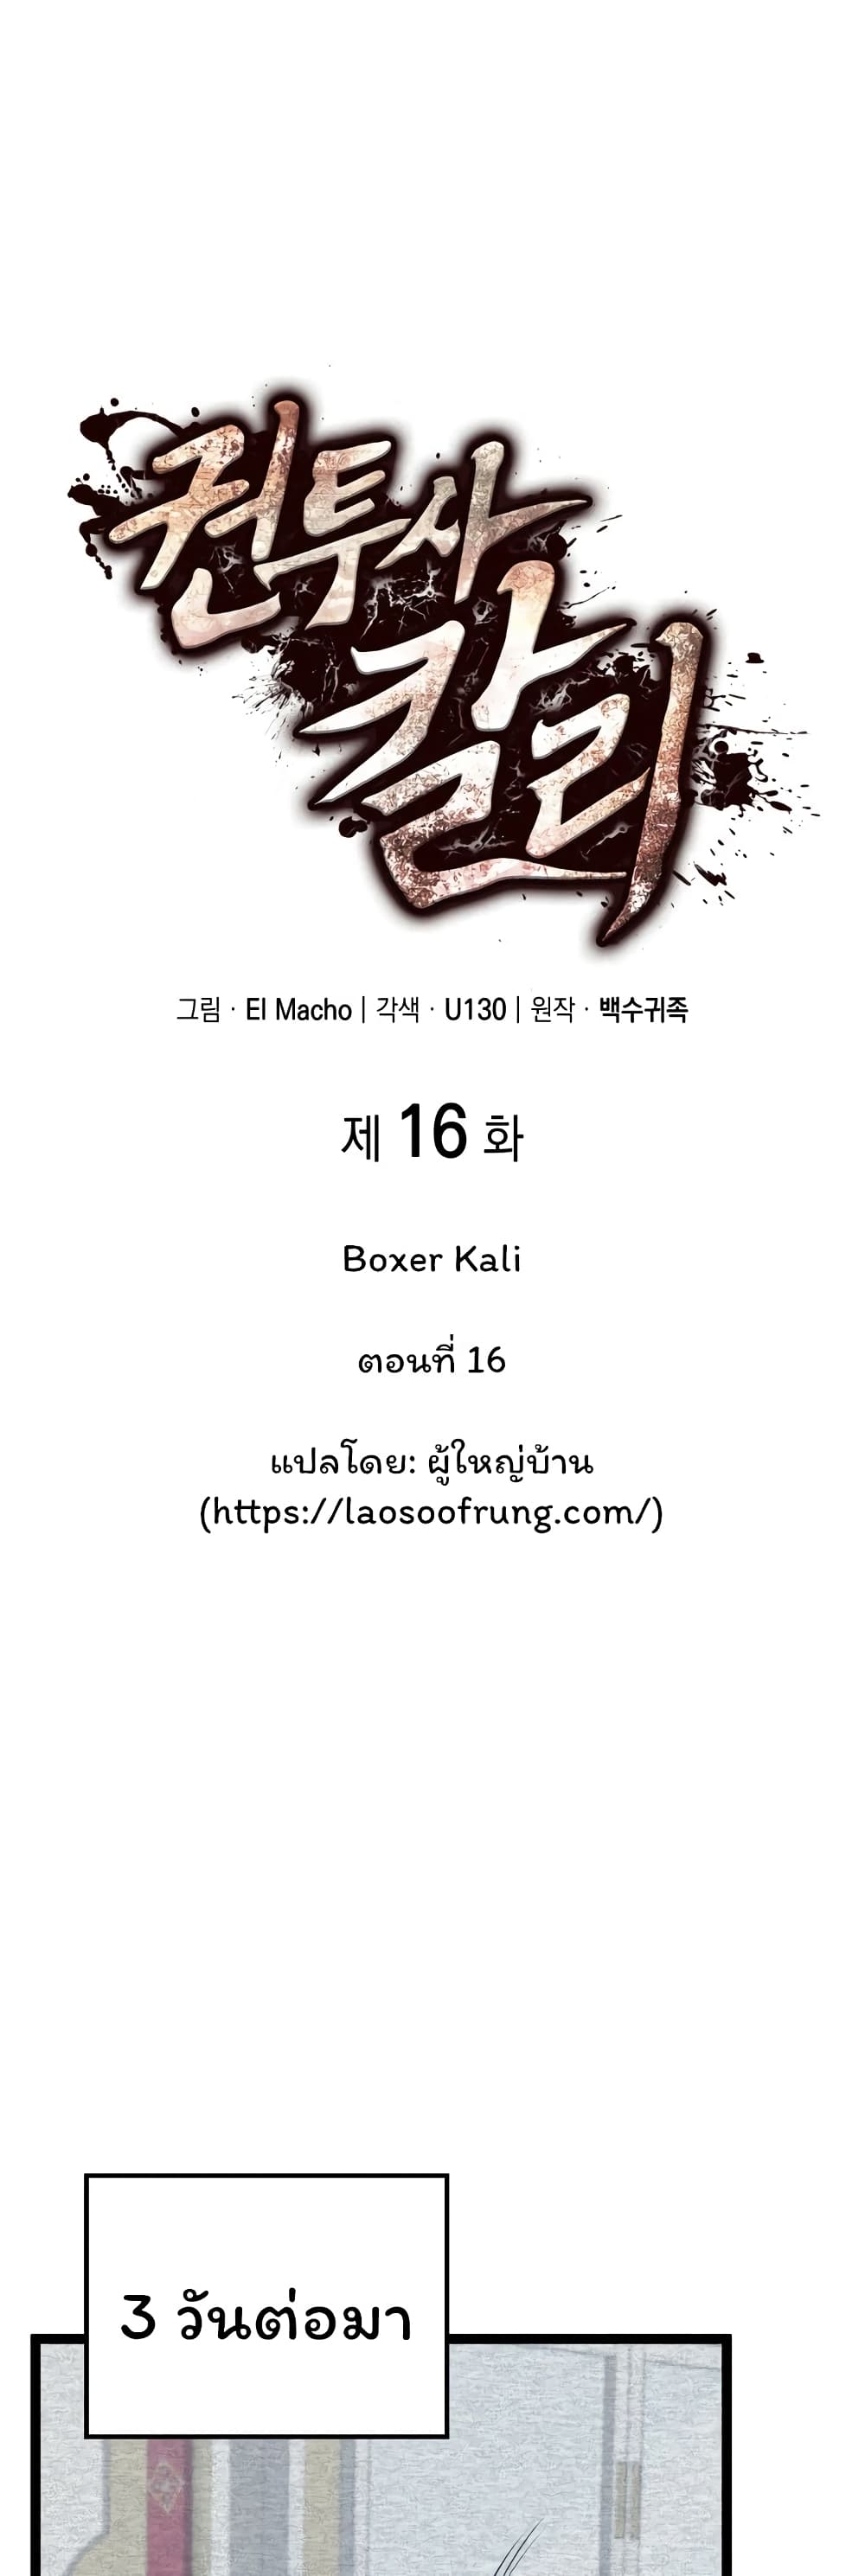 Boxer Kali 16-16